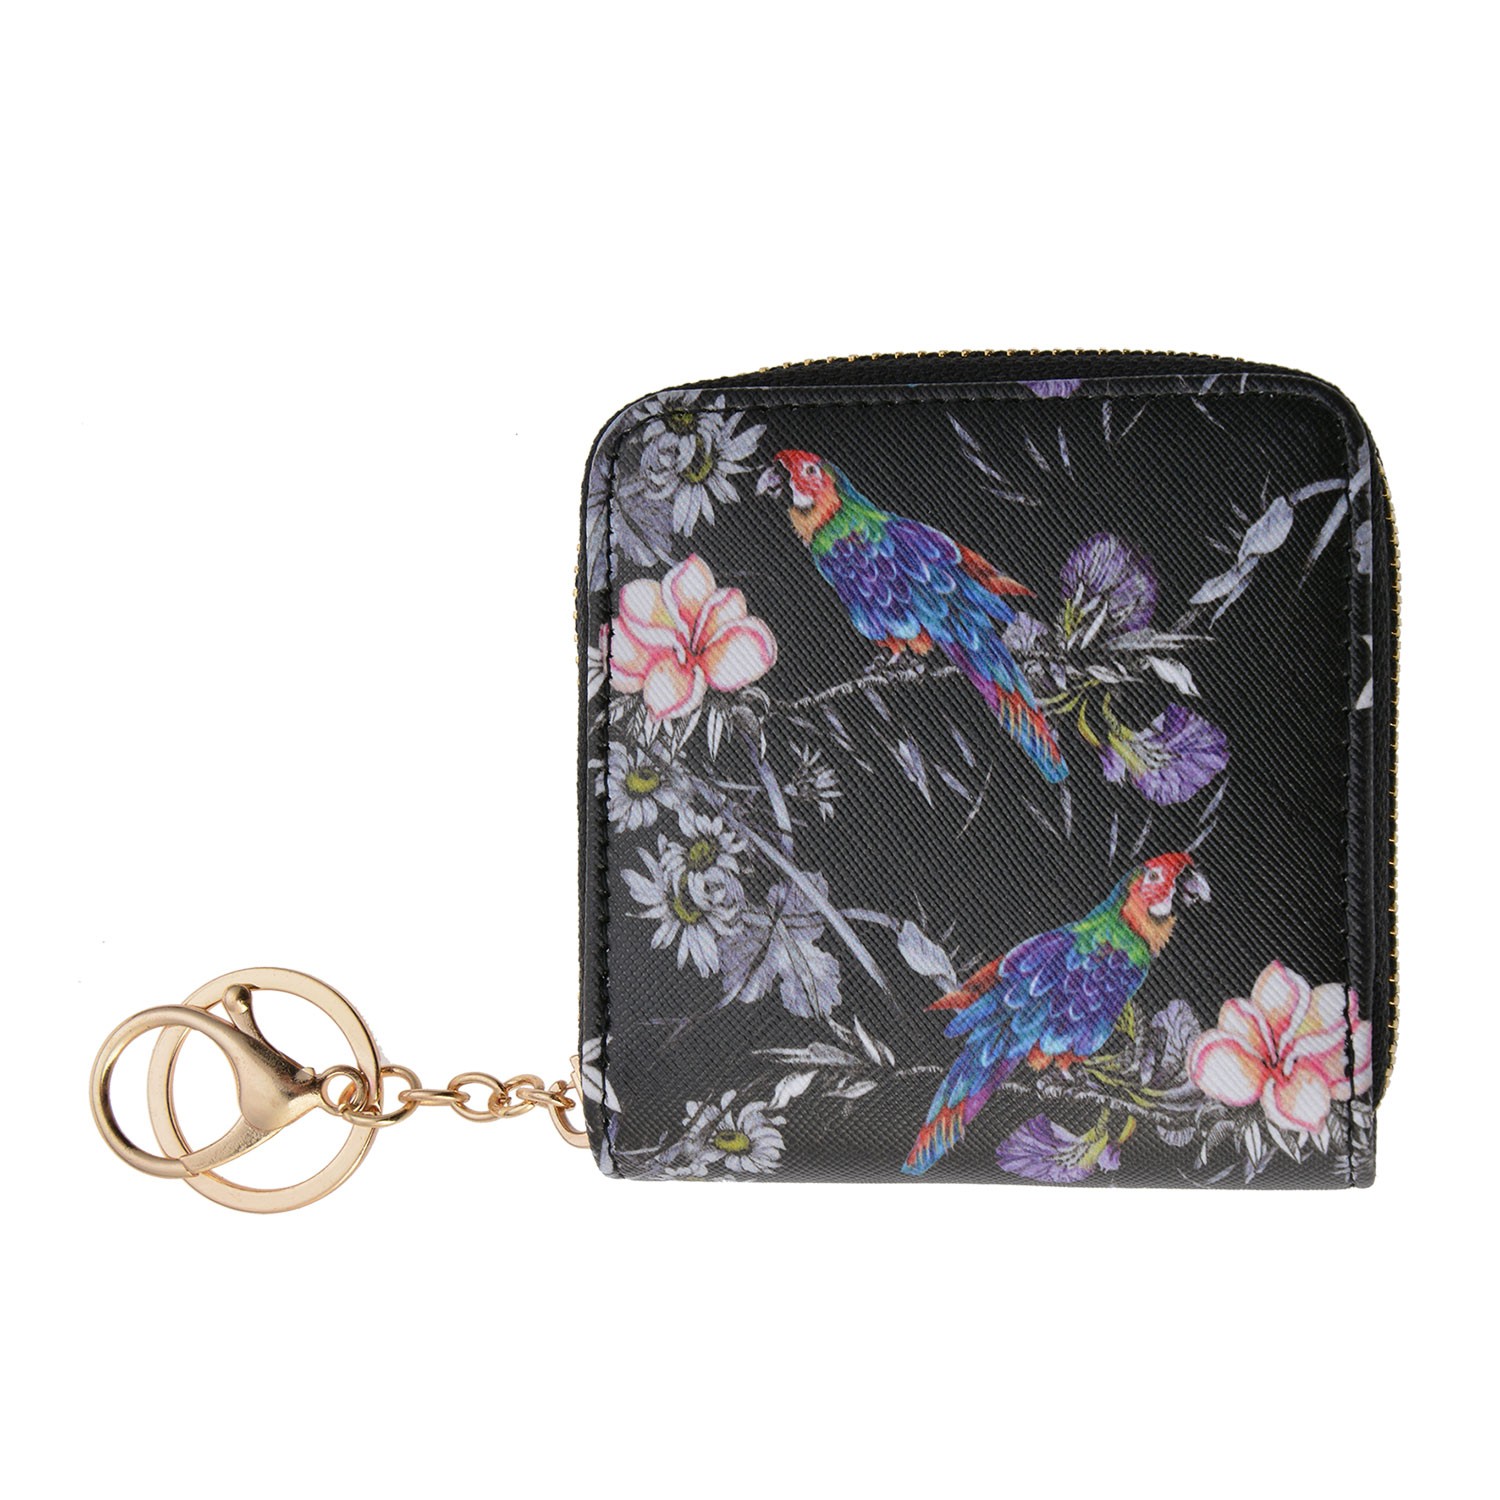 Malá černá peněženka s květy a papoušky Papagay - 10*10 cm MLSBS0043-28